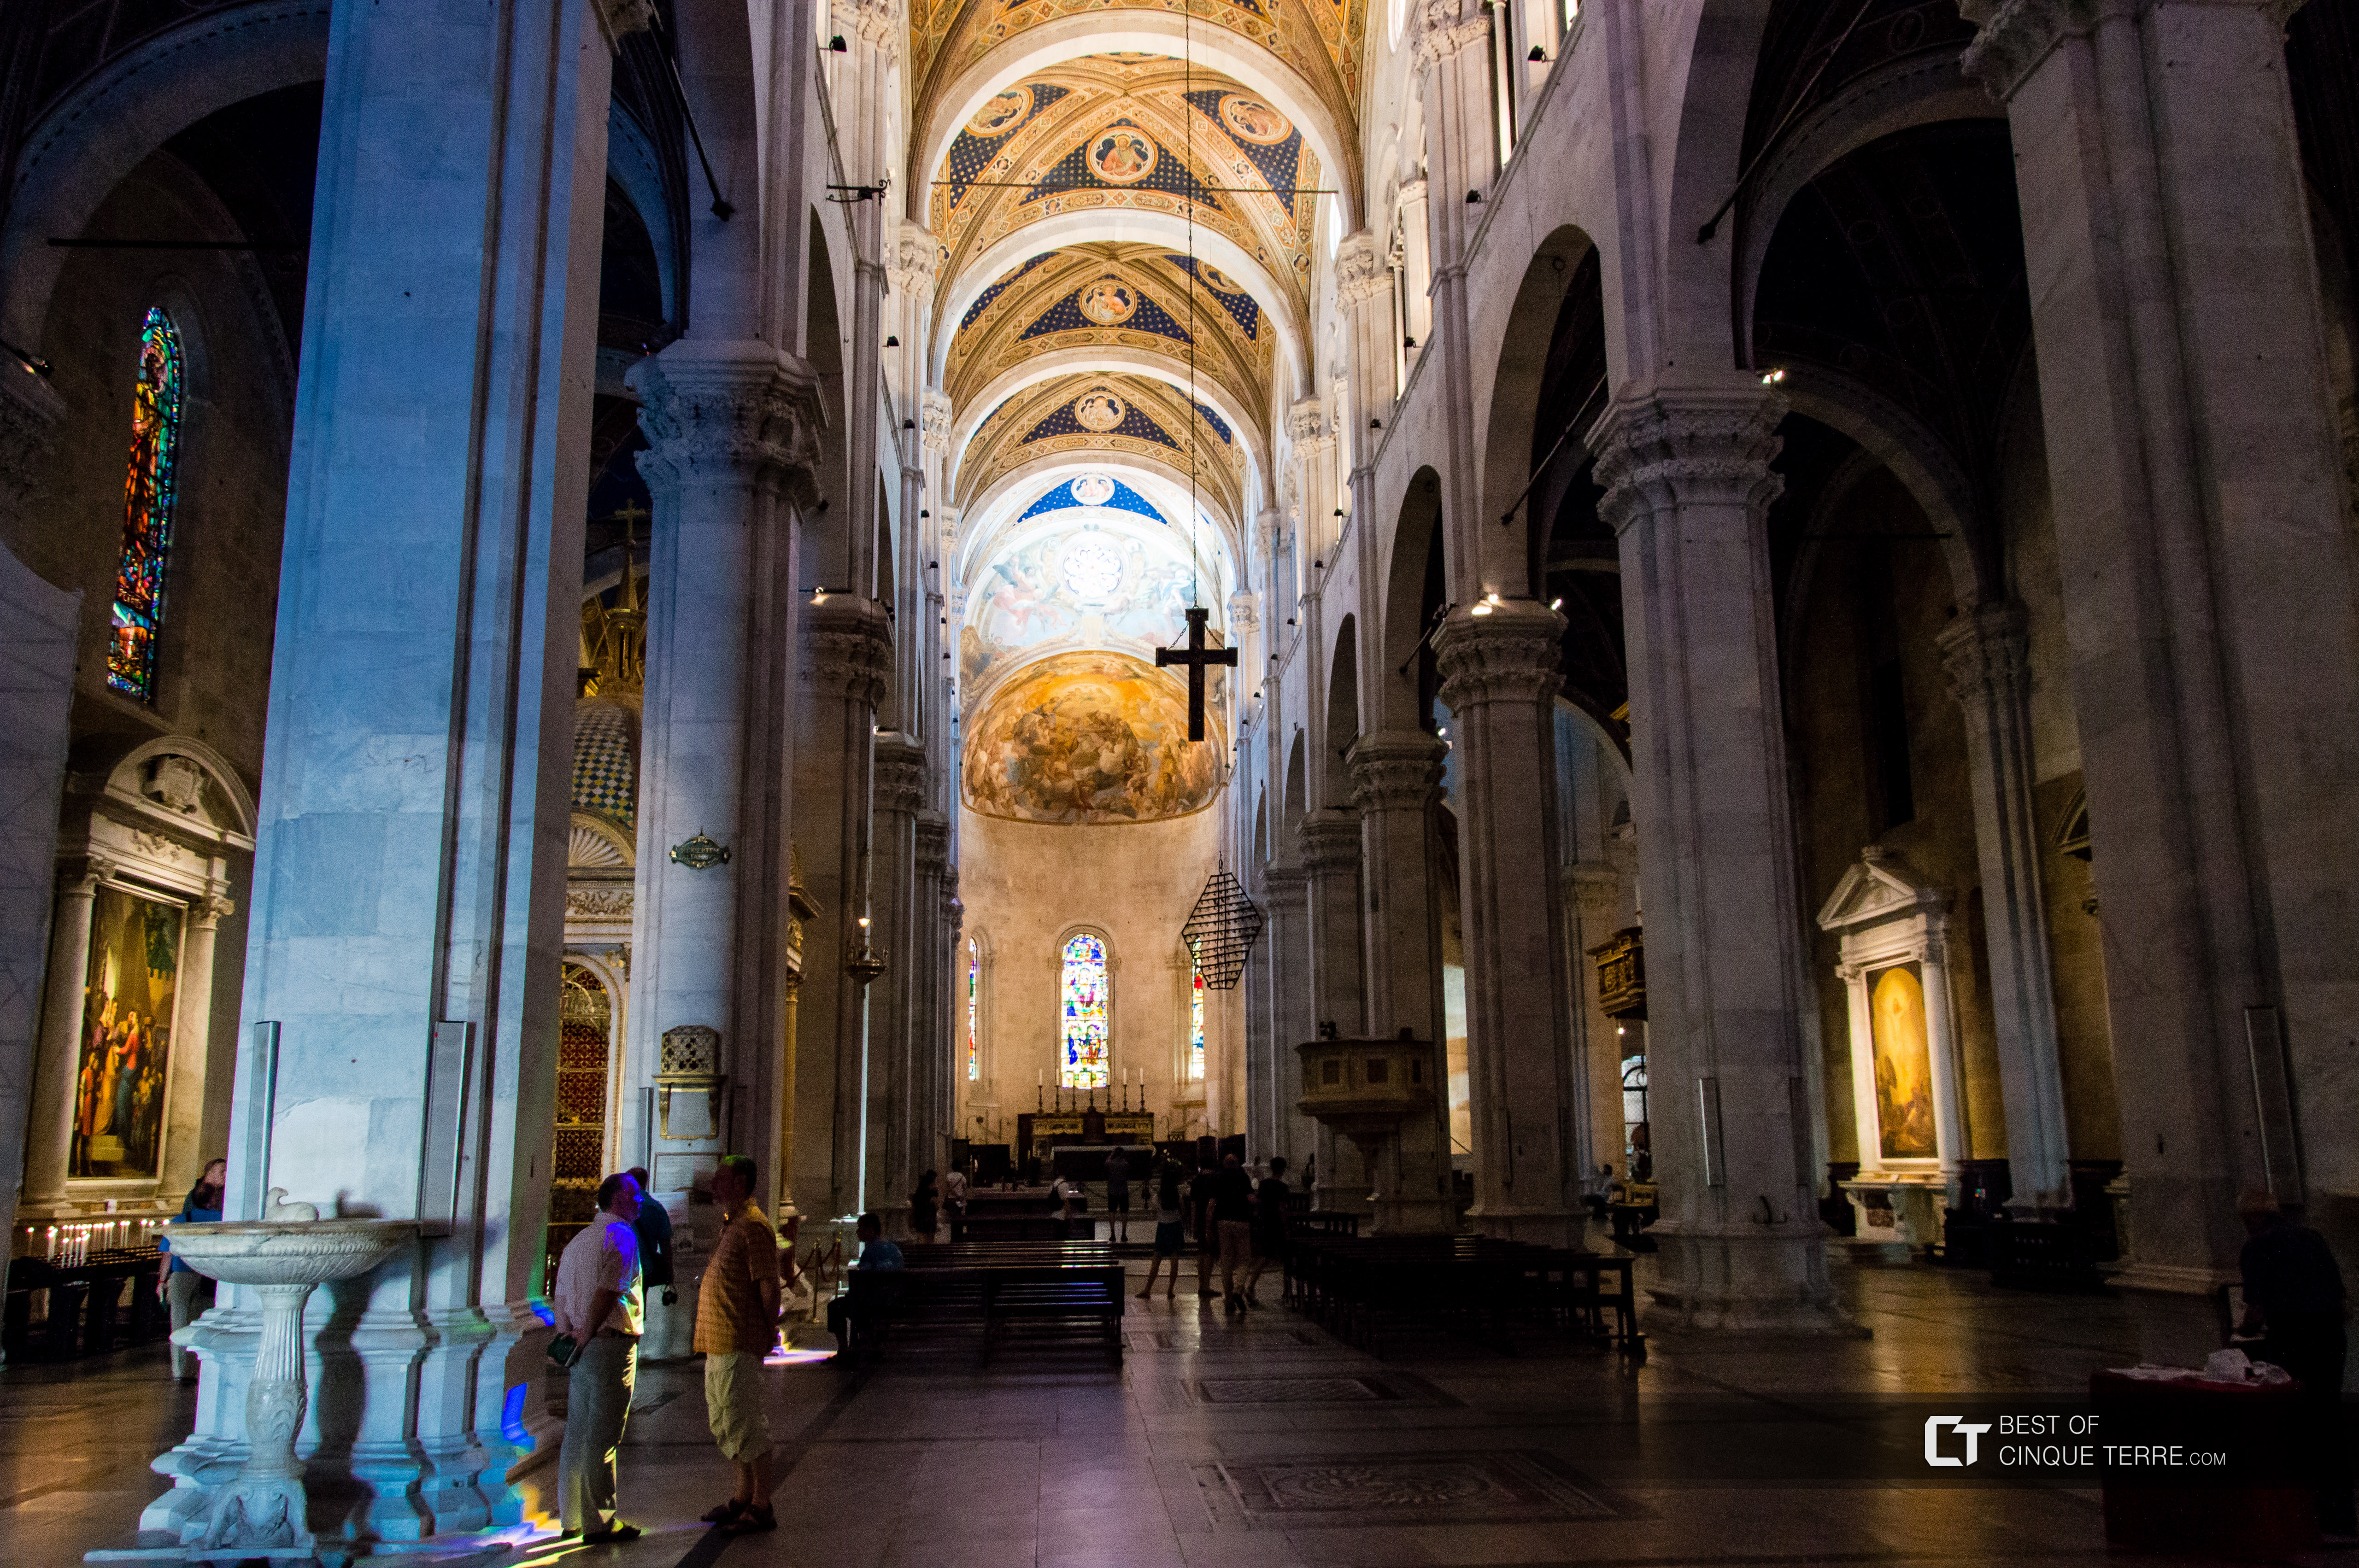 L'interno della Cattedrale, Lucca, Italia